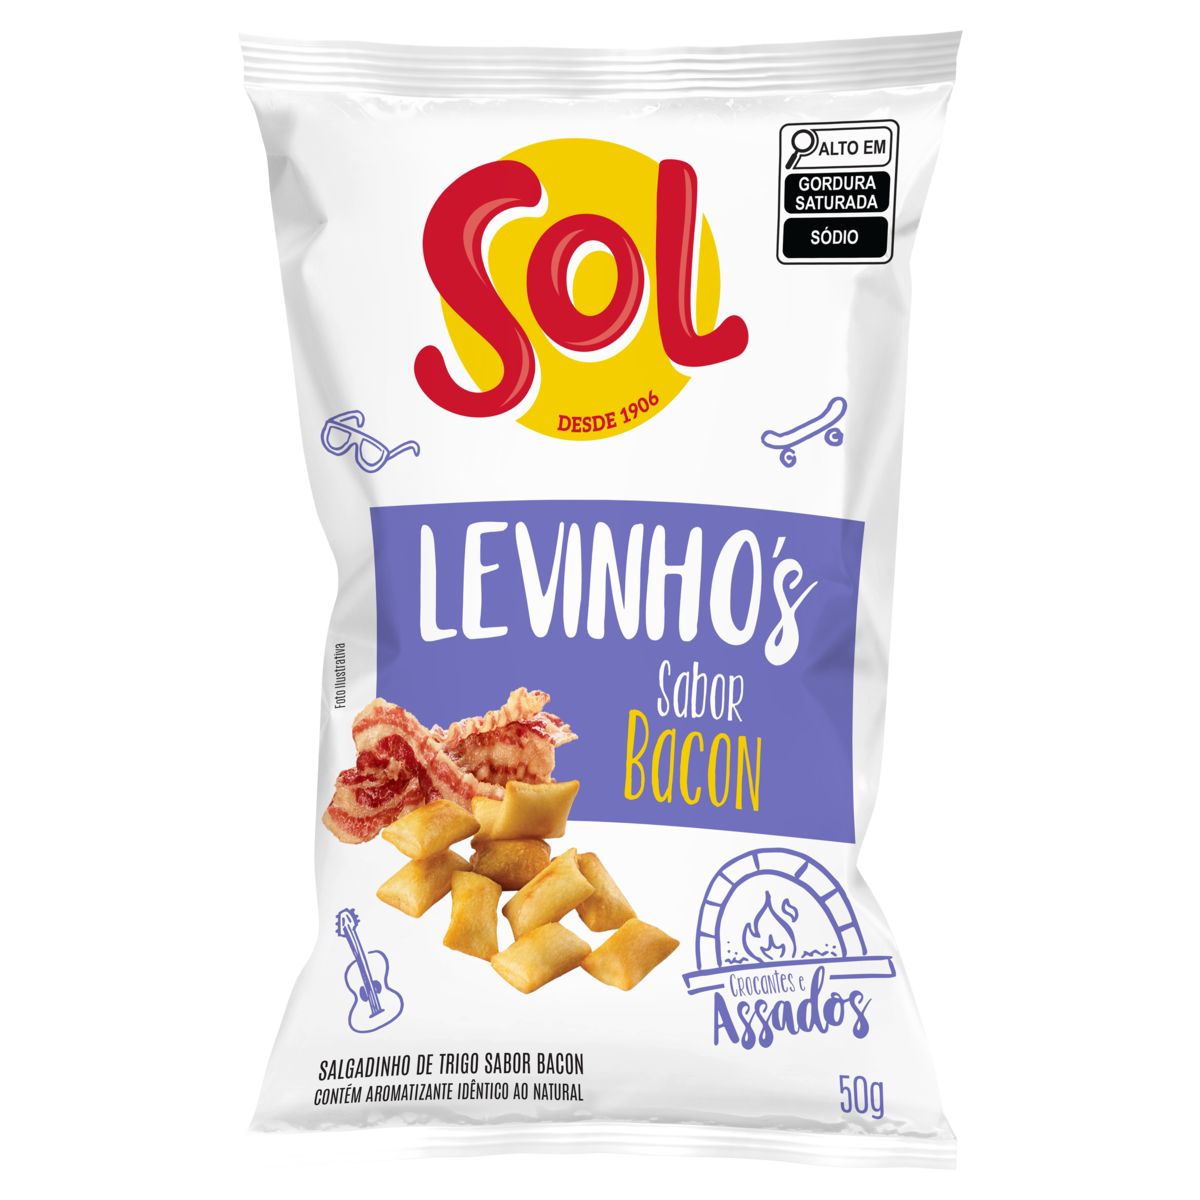 Salgadinho Levinho’s Sol Bacon 50g